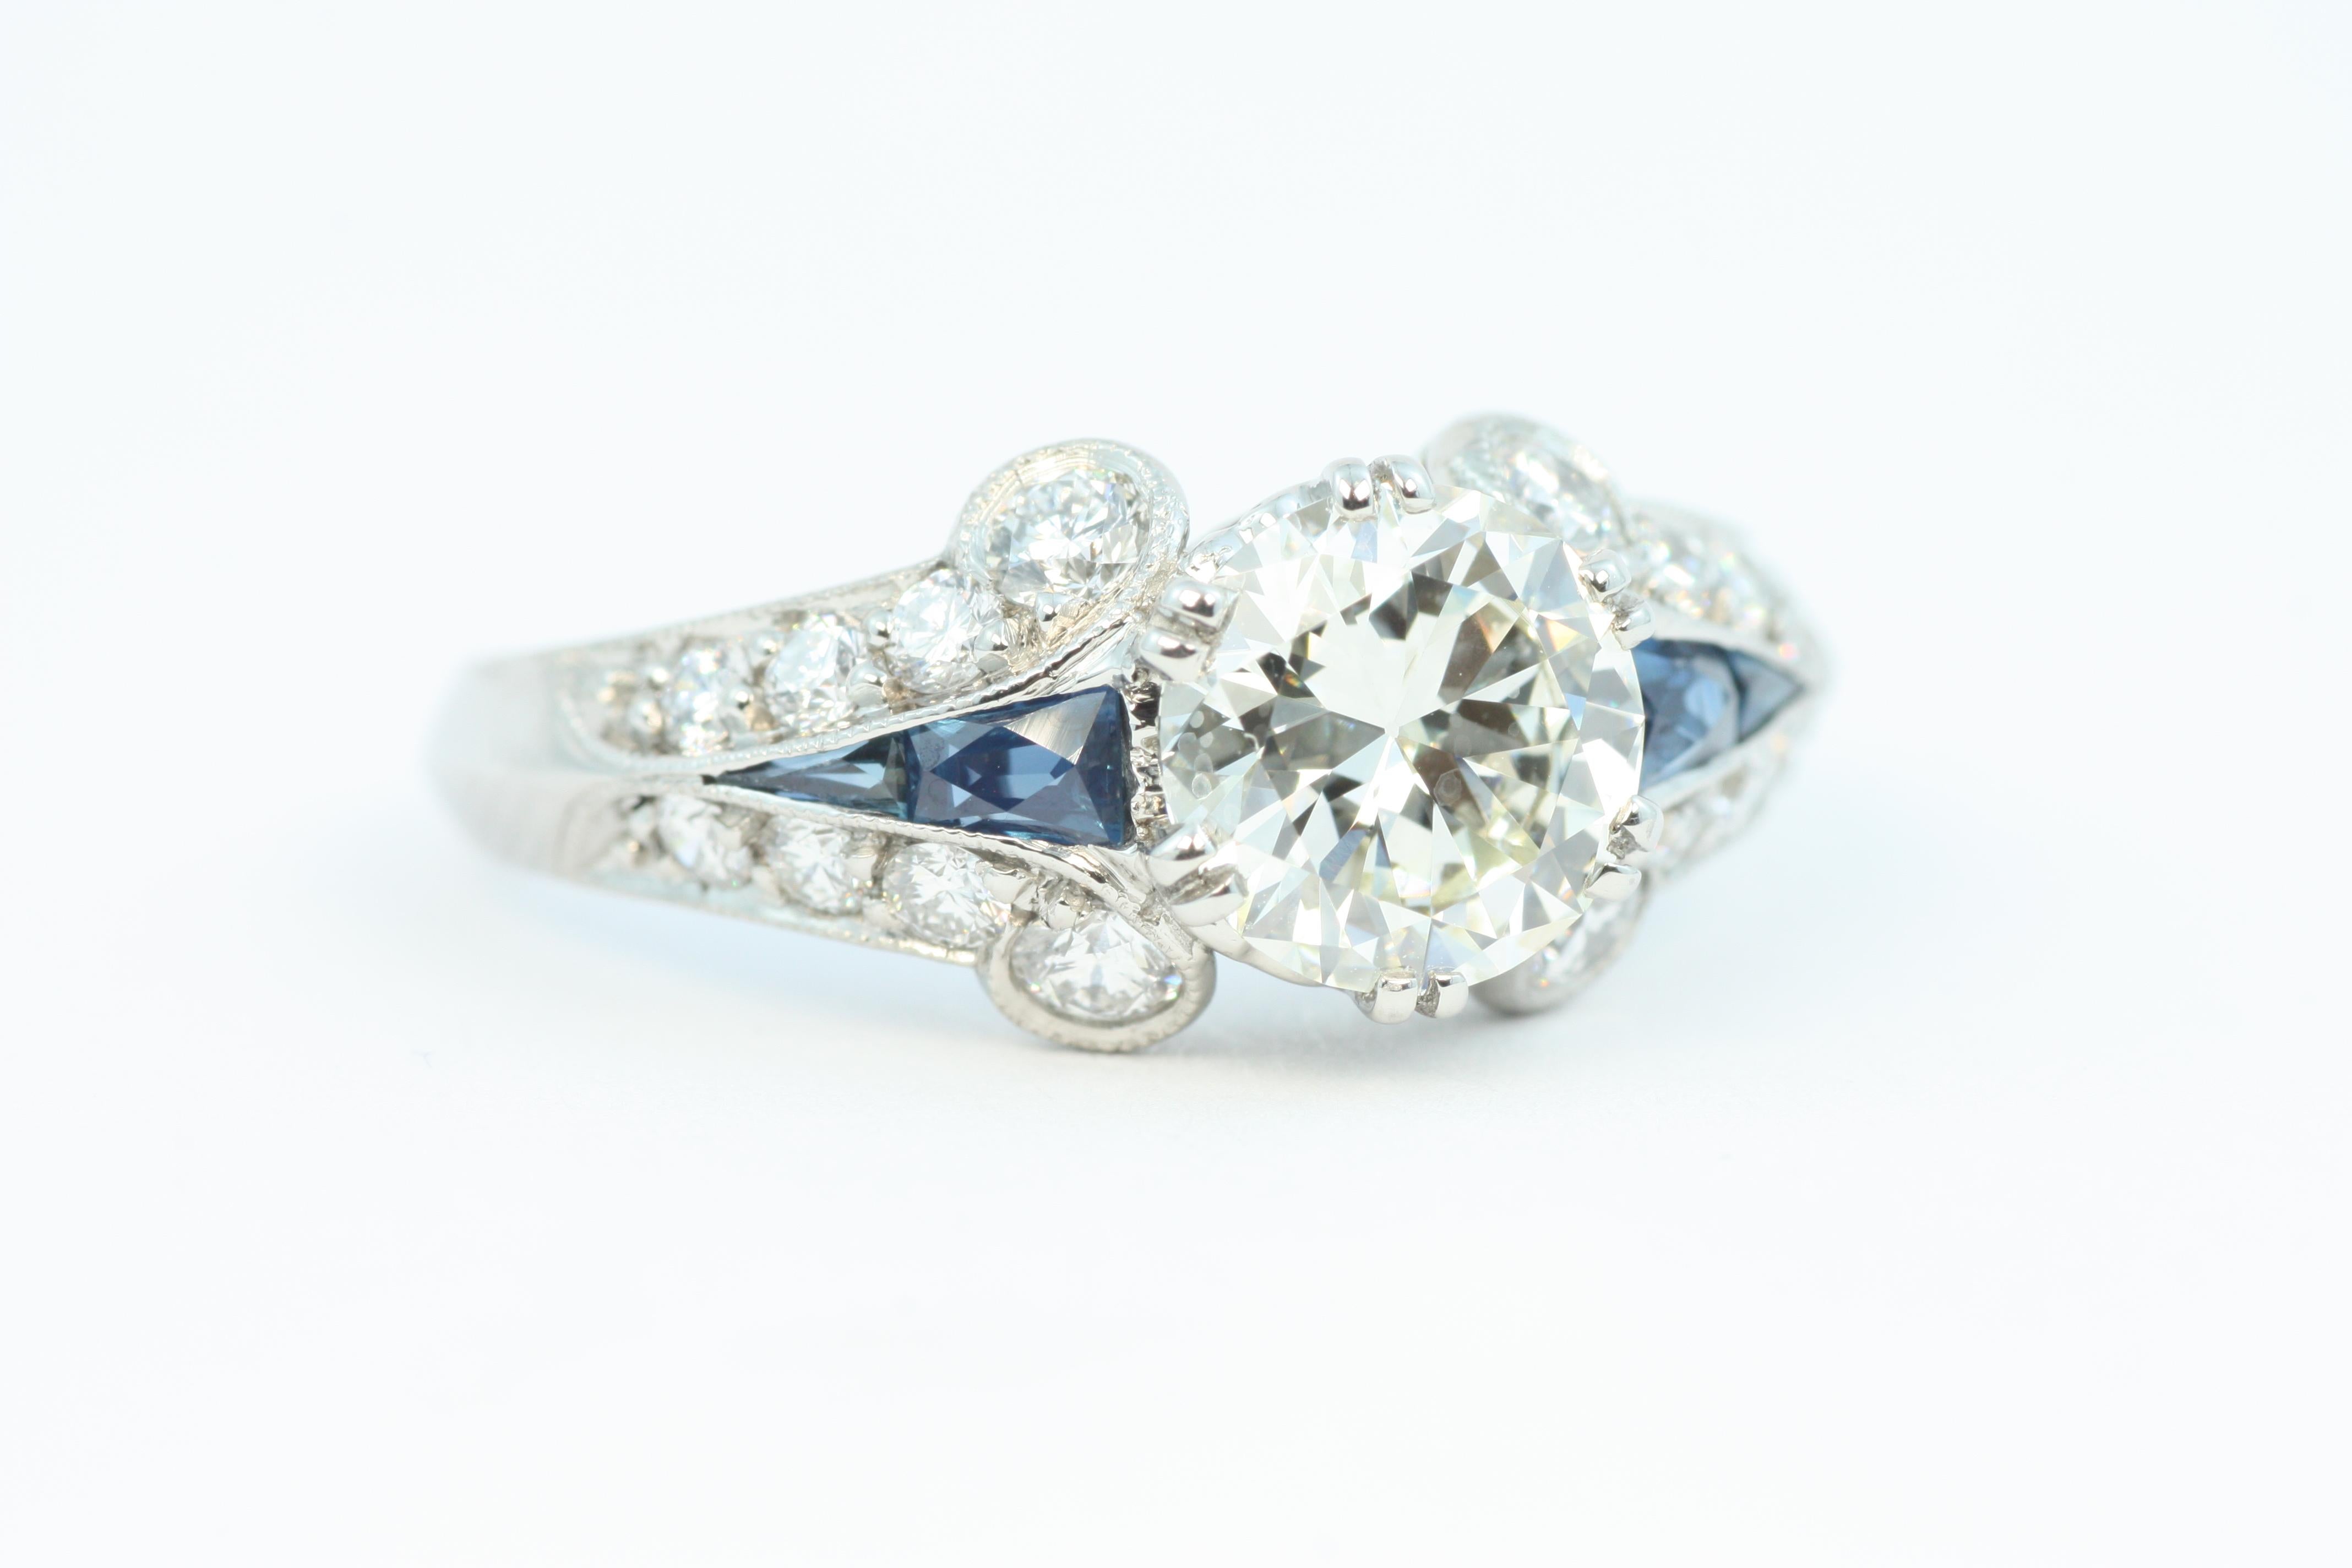 1.7 Carat Total Diamond & Sapphire Art Deco Palladium/Platinum Engagement Ring In New Condition For Sale In Venice, CA